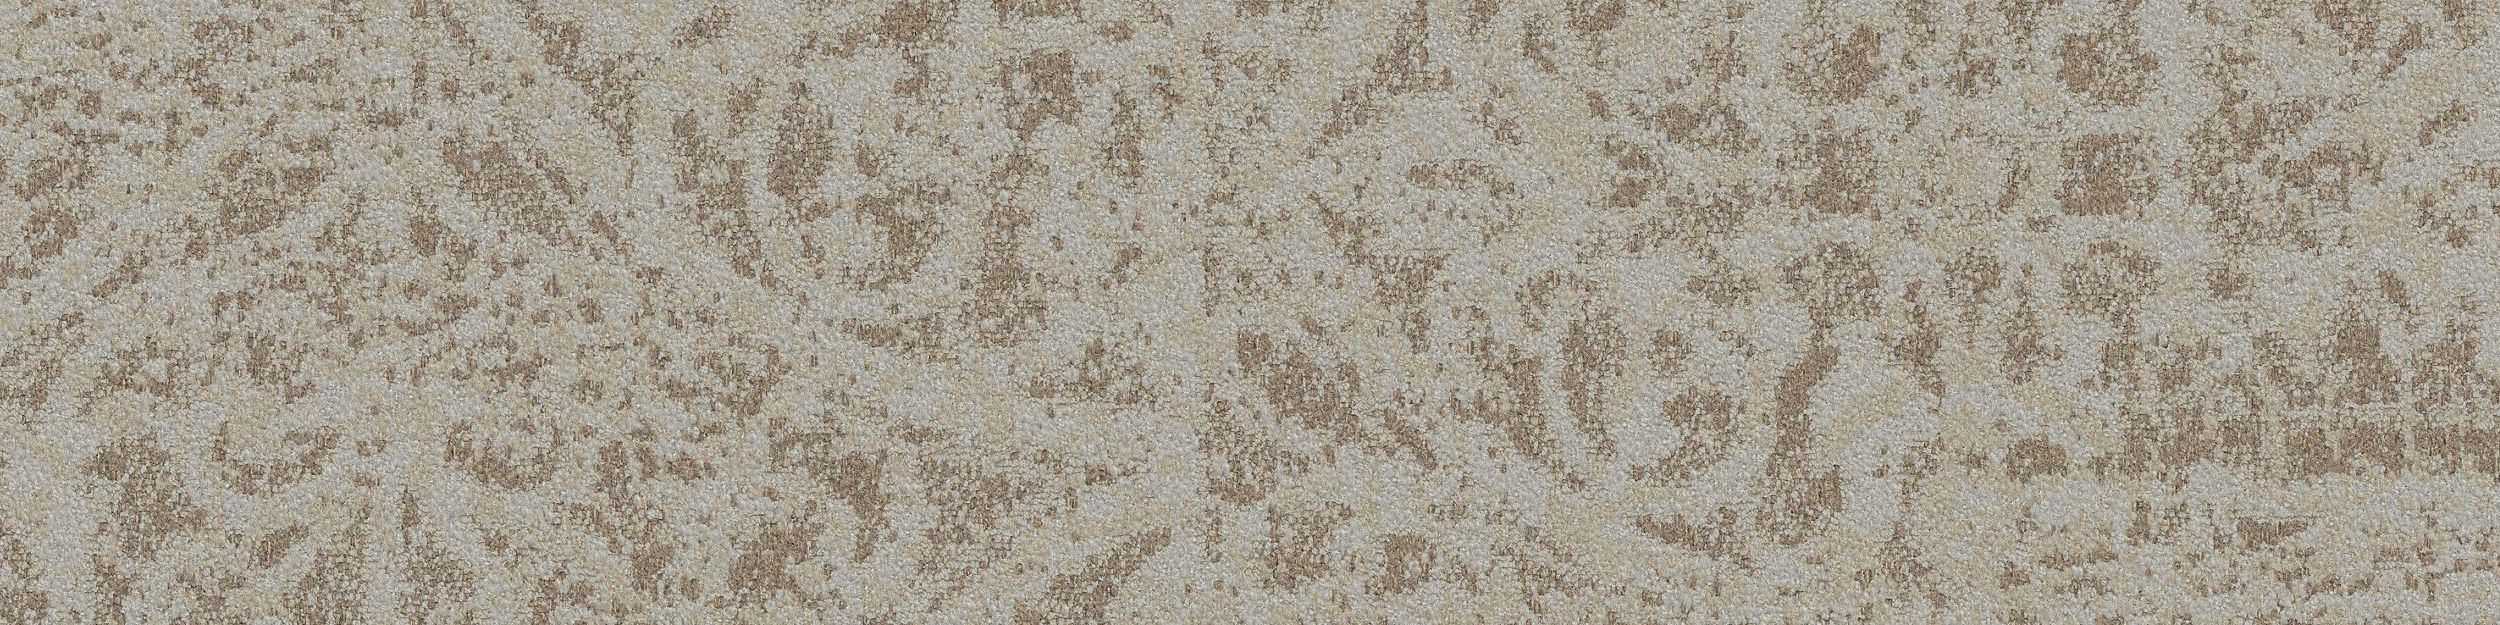 PM47 Carpet Tile In Garden Stone numéro d’image 1